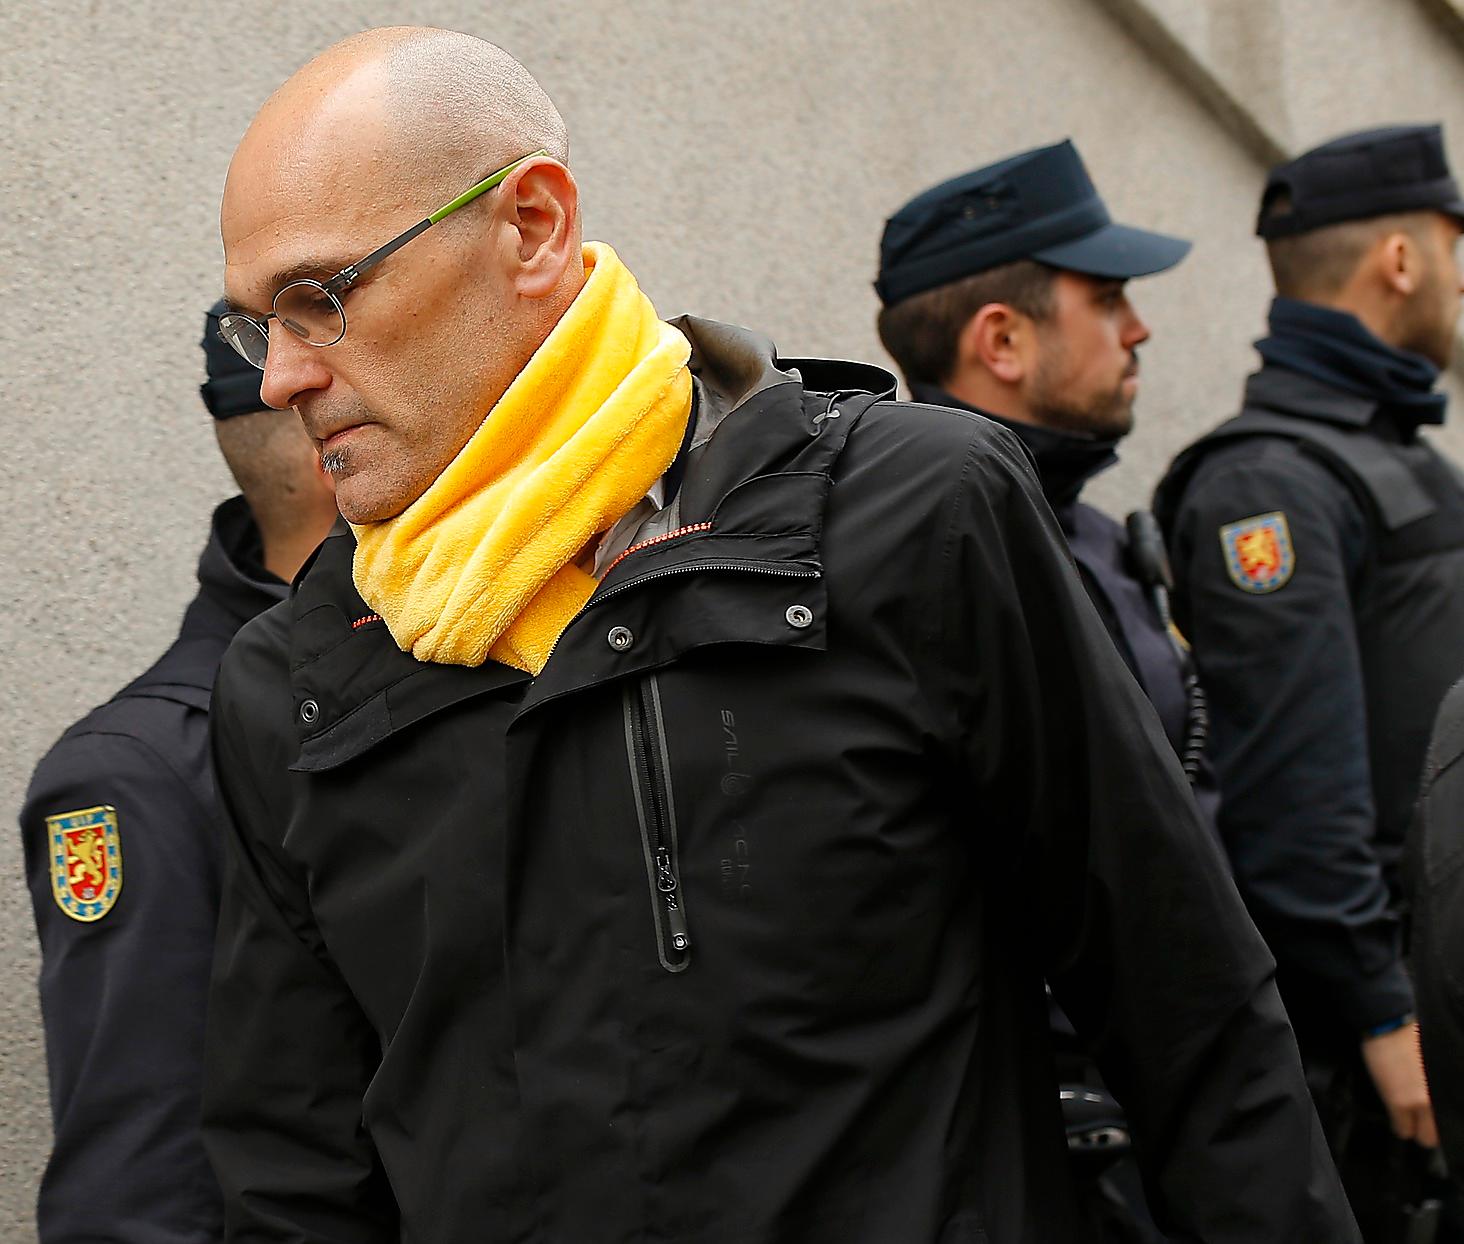 Raul Romeva var utrikespolitisk rådgivare åt den katalanska regionregeringen och dömdes till tolv års fängelse för uppvigling mot spanska staten. Bakom galler har han skrivit boken ”Hopp och frihet”.